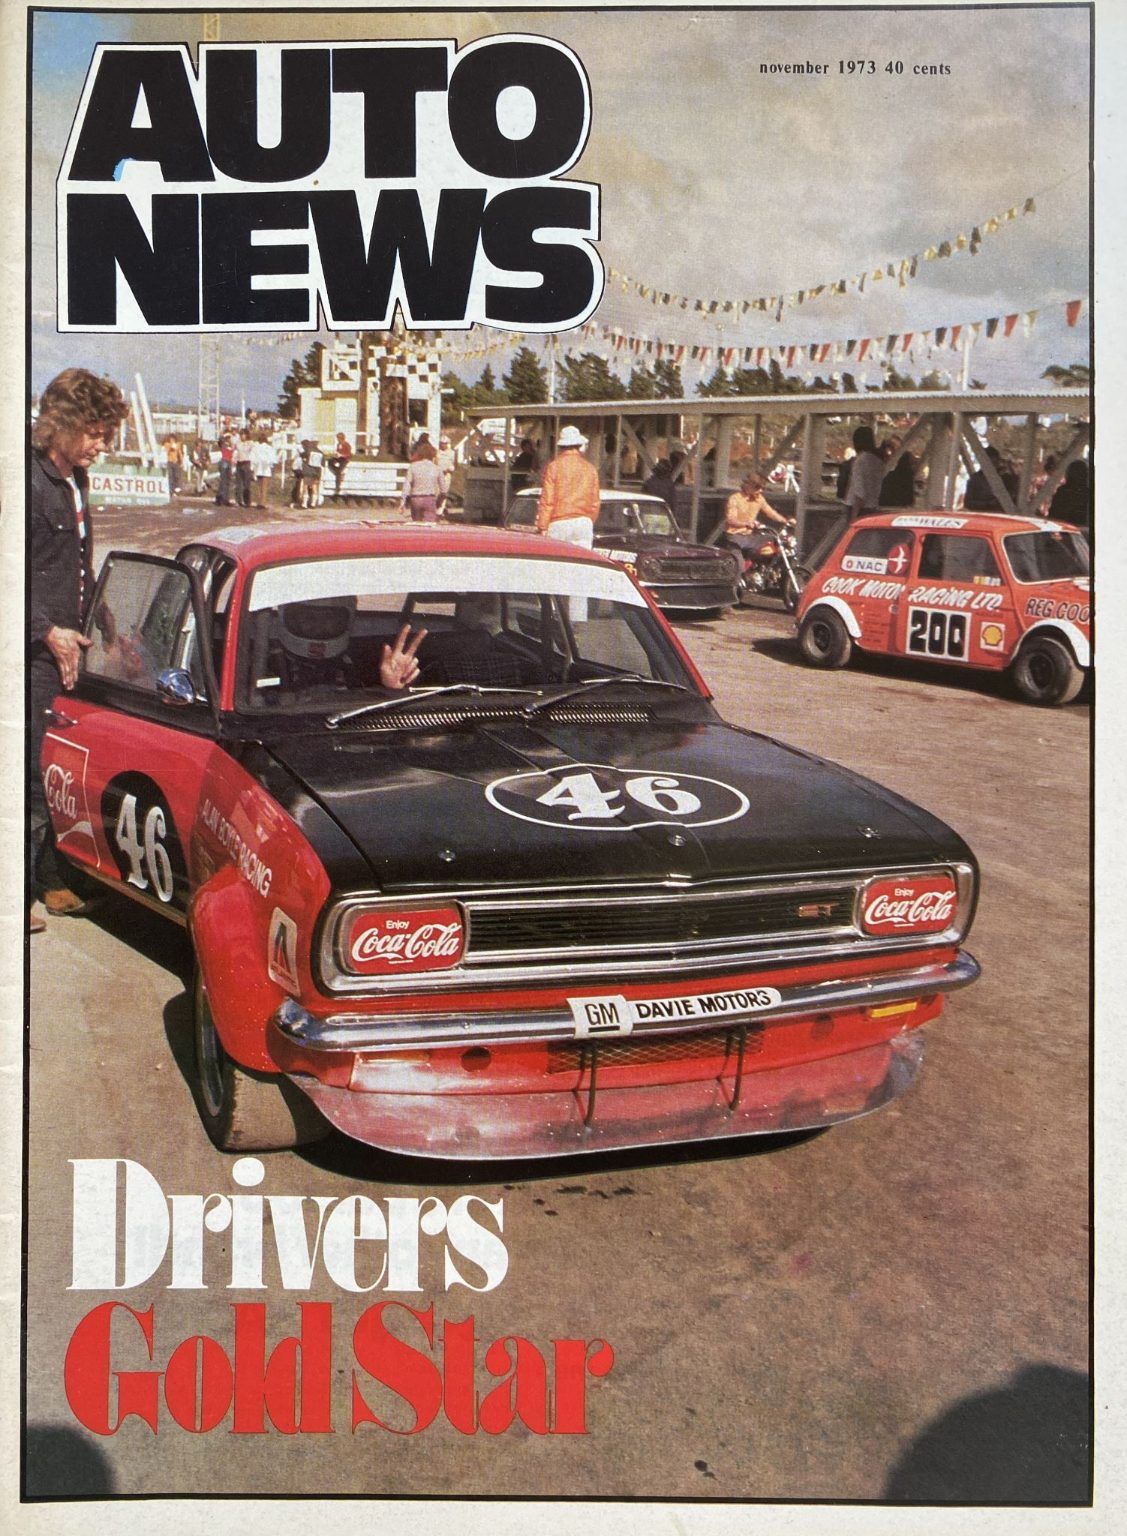 OLD MAGAZINE: Auto News - November 1973